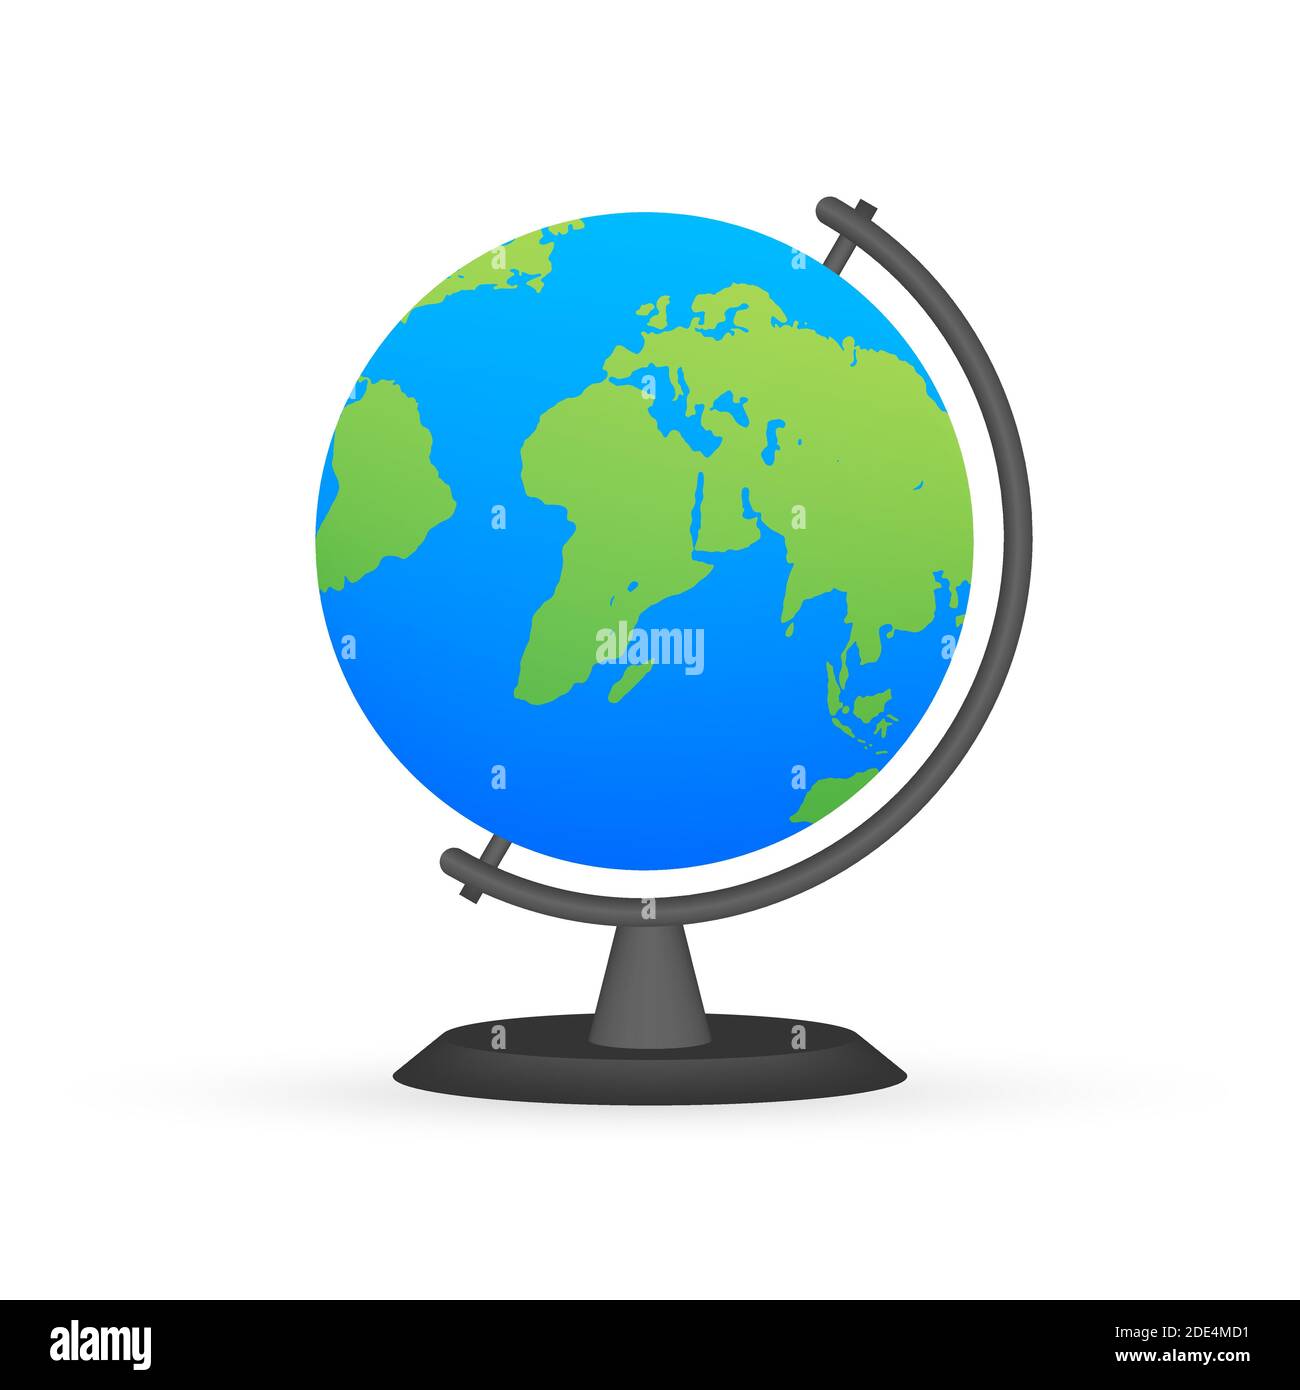 Globi di terra isolati su sfondo bianco. Icona pianeta piano Terra. Illustrazione di stock vettoriale. Illustrazione Vettoriale